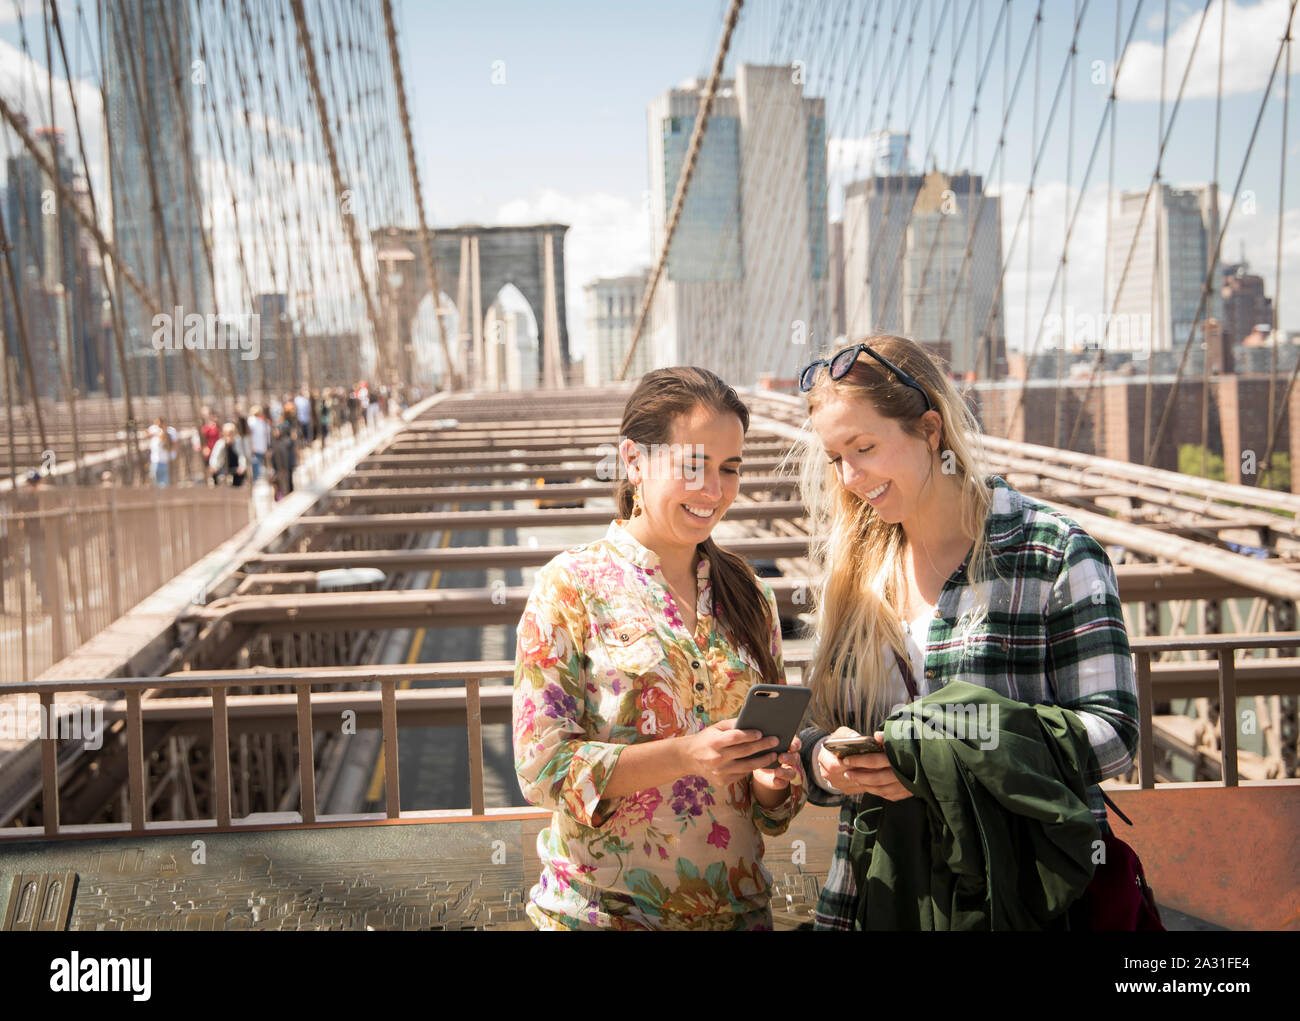 Zwei 20 Jahre alte weibliche Touristen vergleichen Handy Fotos auf der Brooklyn Bridge In New York City, USA. Stockfoto